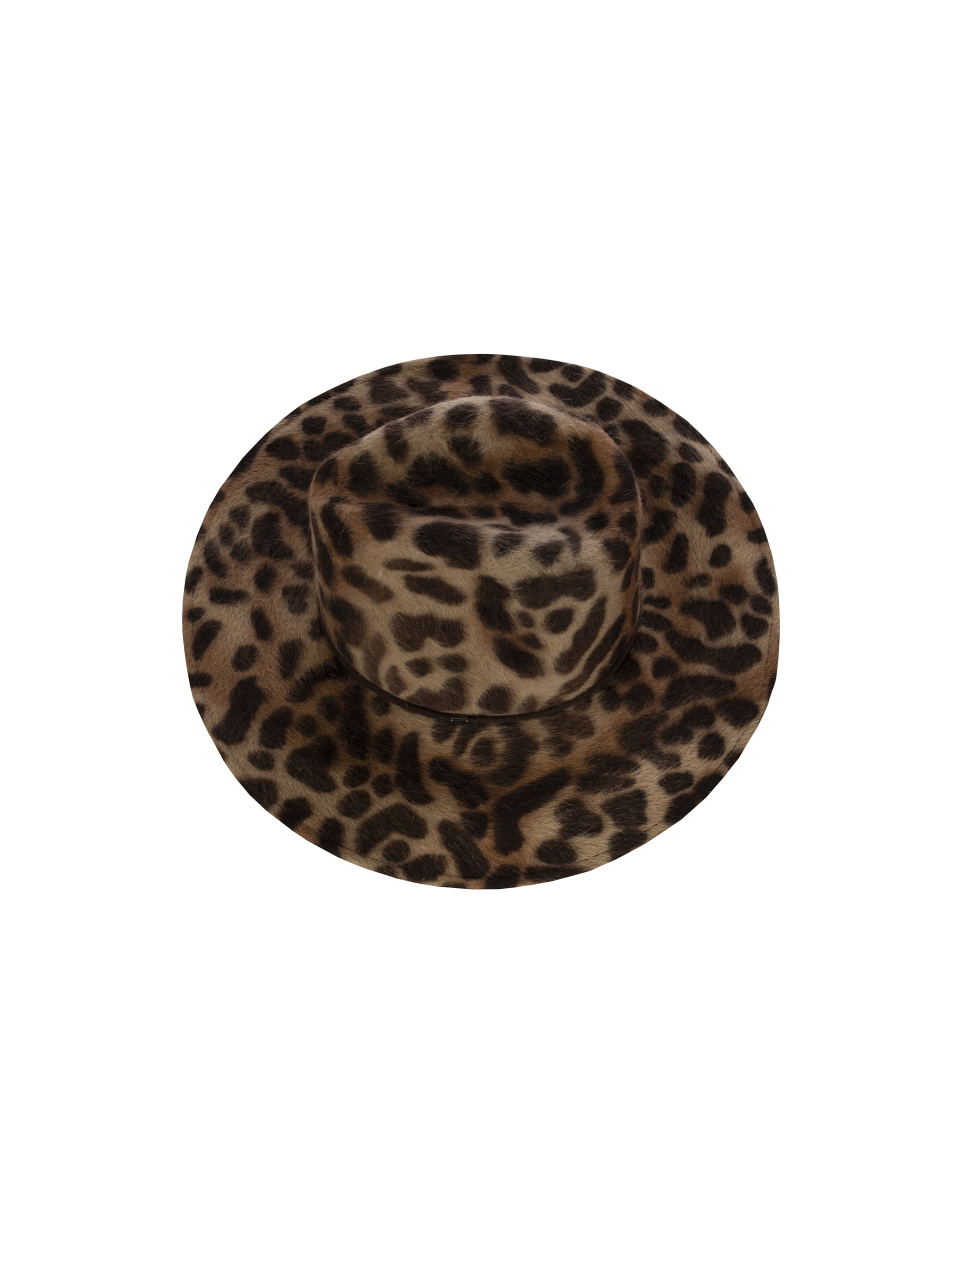 Фетровая шляпа с леопардовым принтом, 1